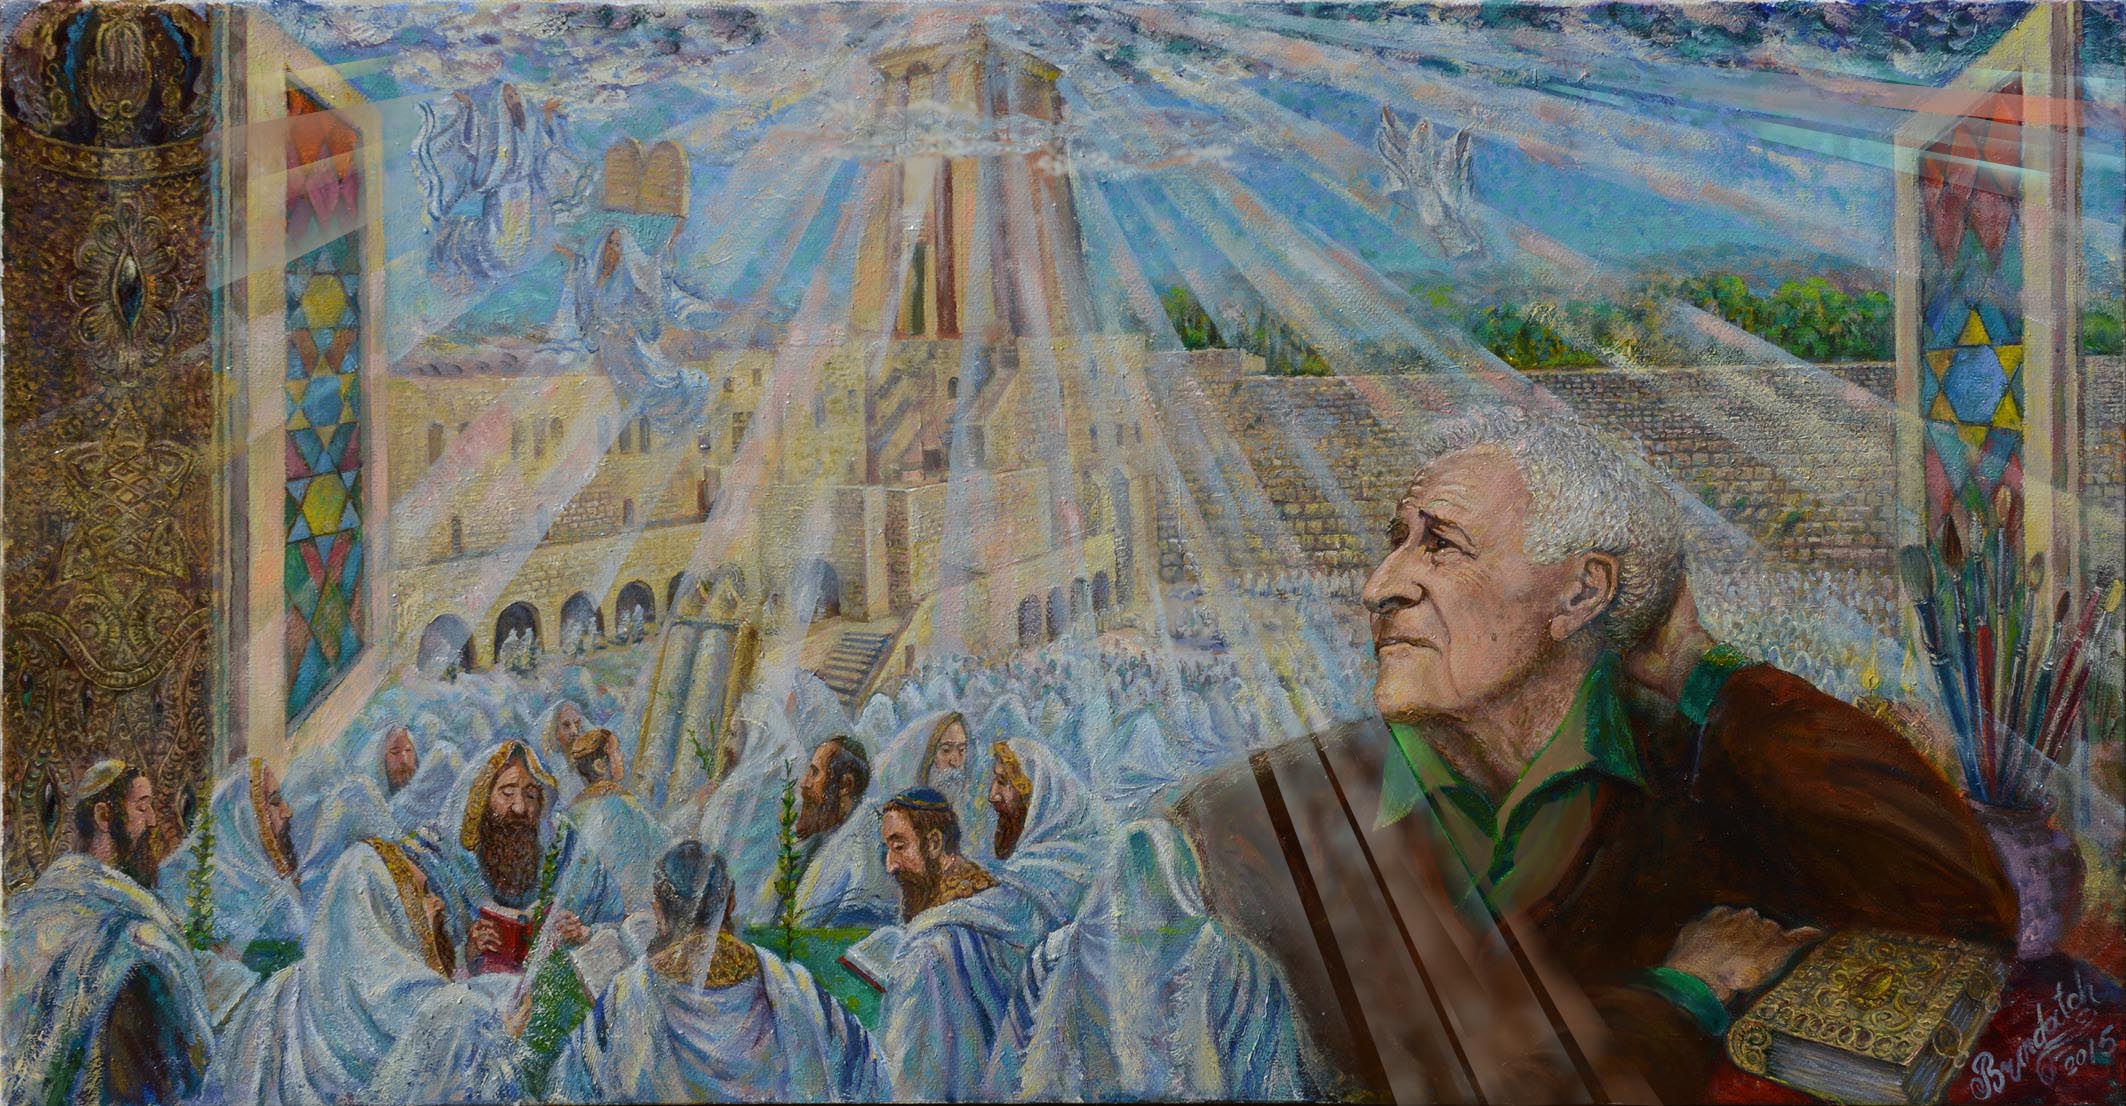 В.Бриндач "Шагал и Иерусалим", 2015 (публикуется впервые)